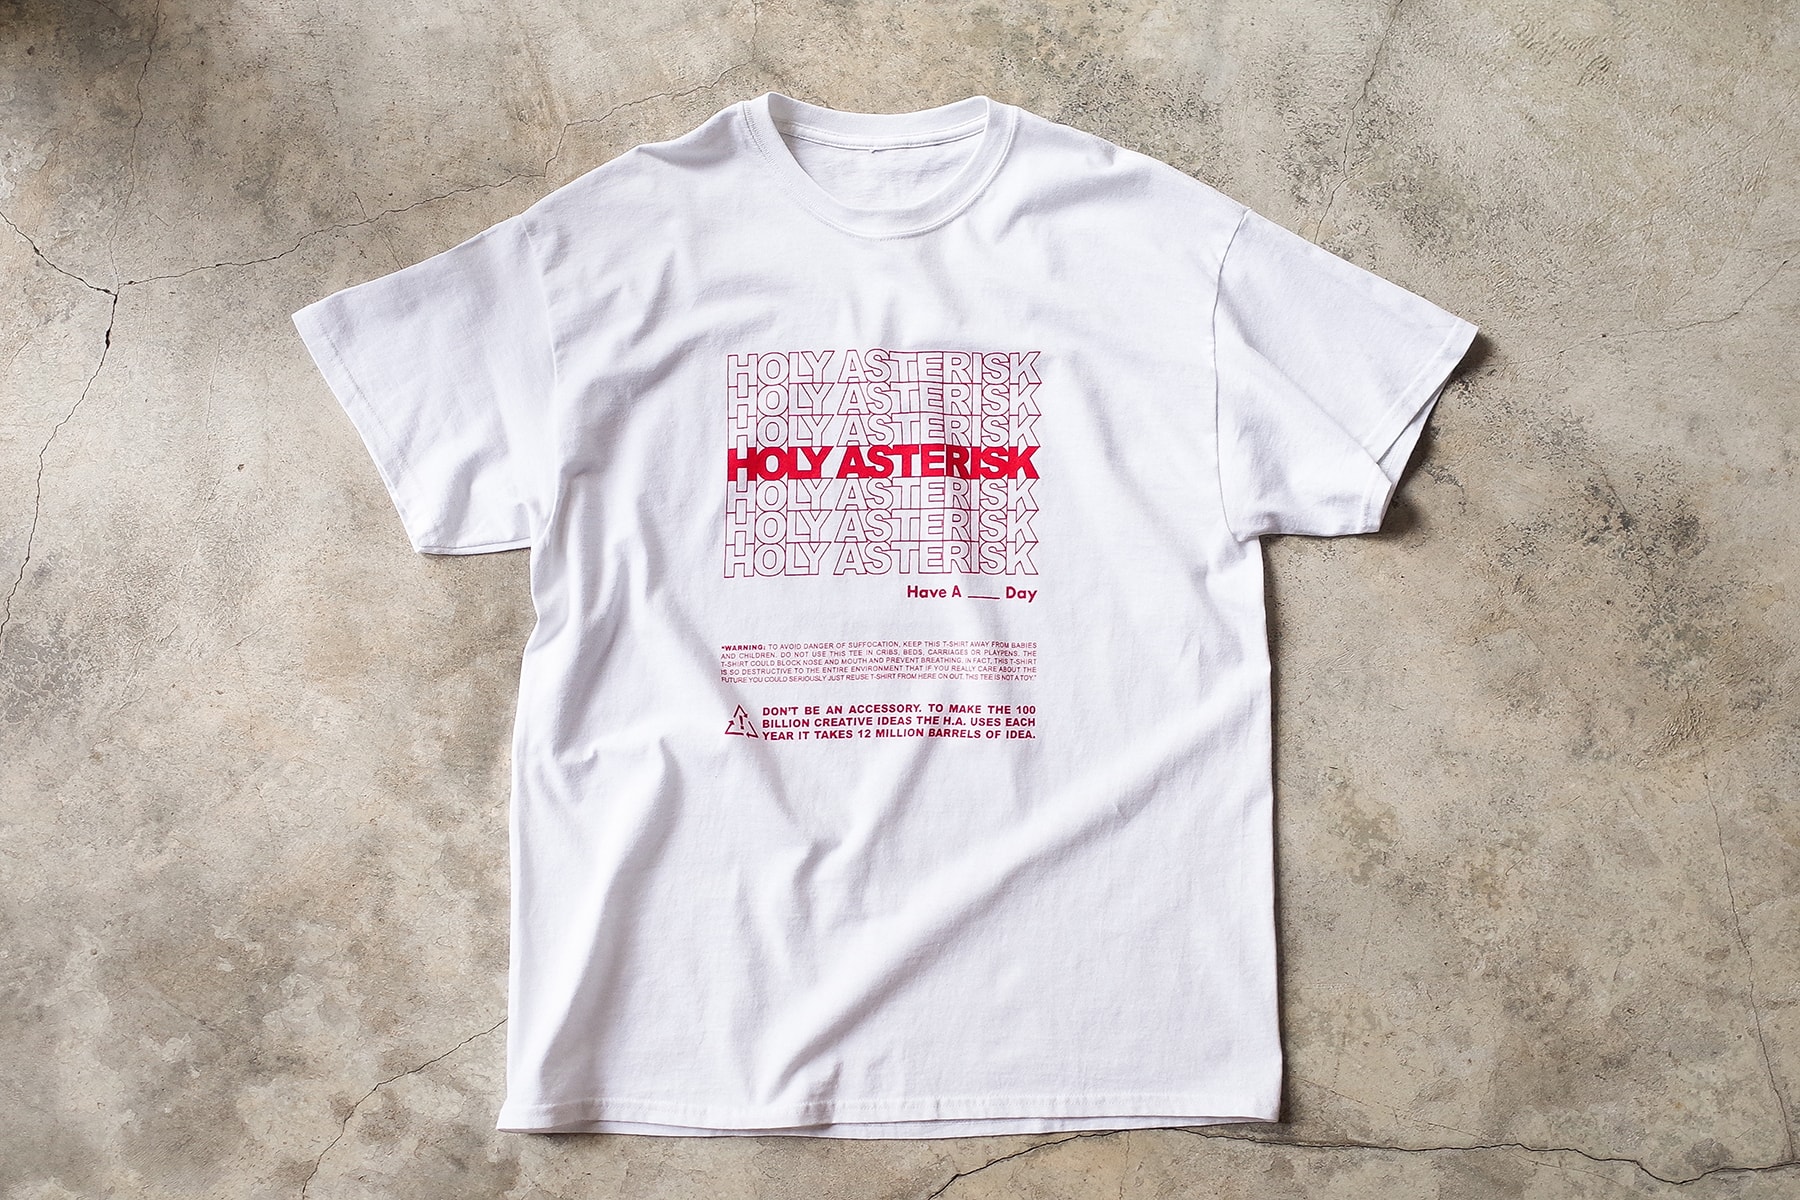 上環流行文化店 Asterisk x Holymountain Co. 全新聯名企劃「HOLYASTERISK」